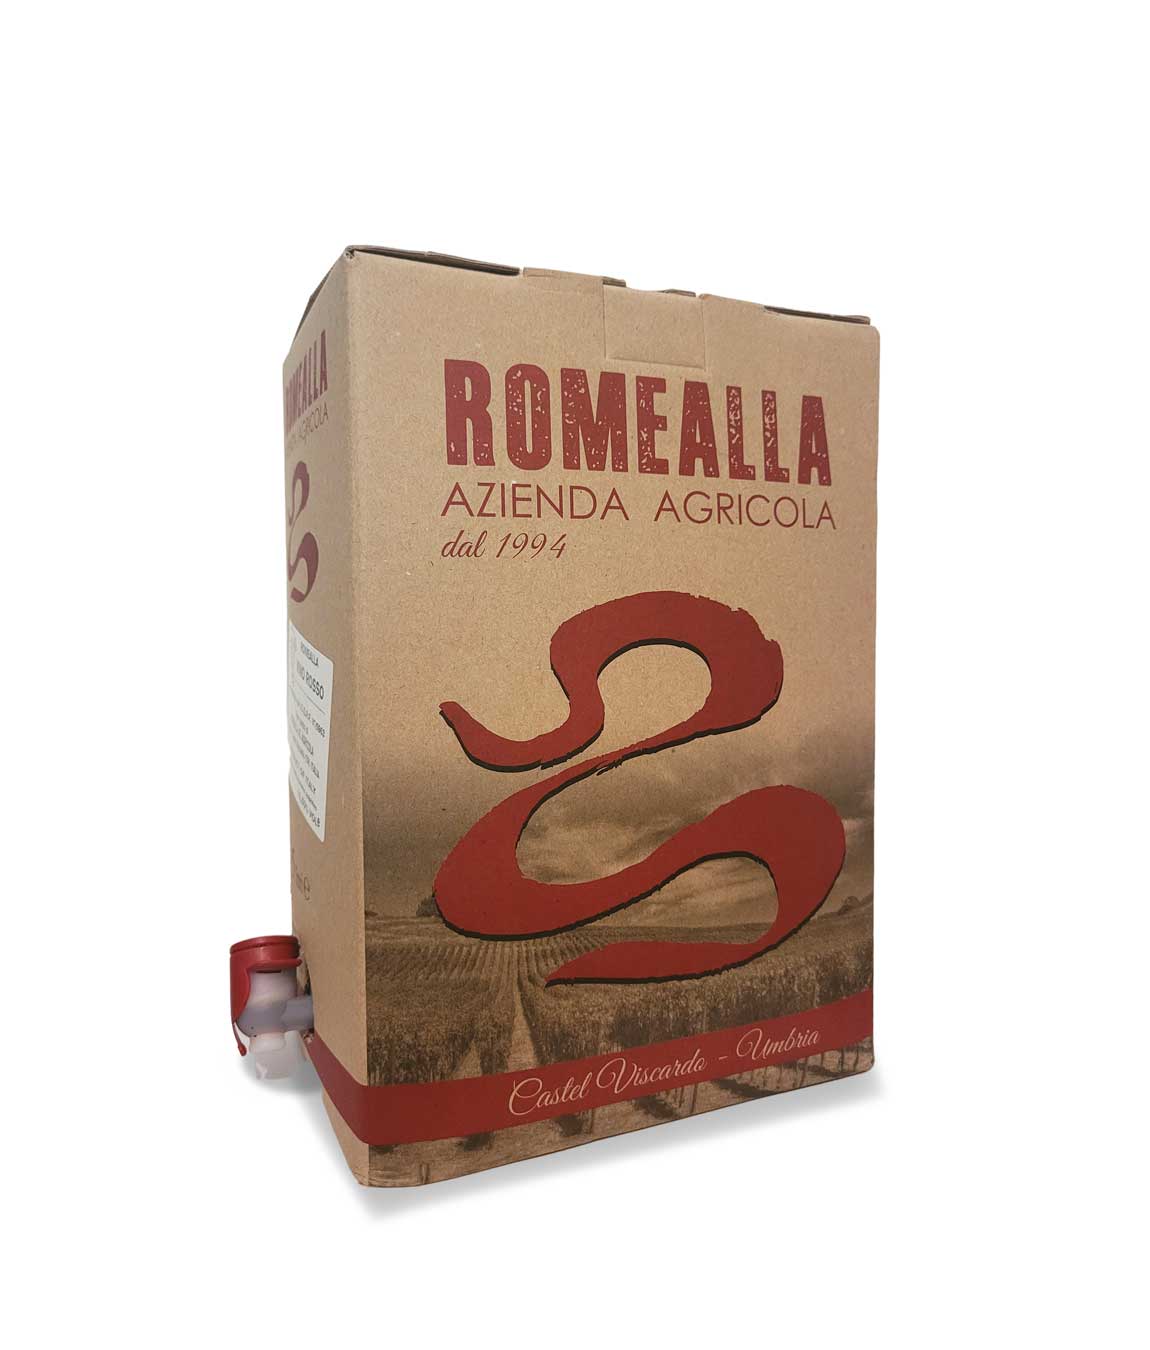 Bag in Box Rosso Amabile - 5lt - Azienda Agricola Romealla